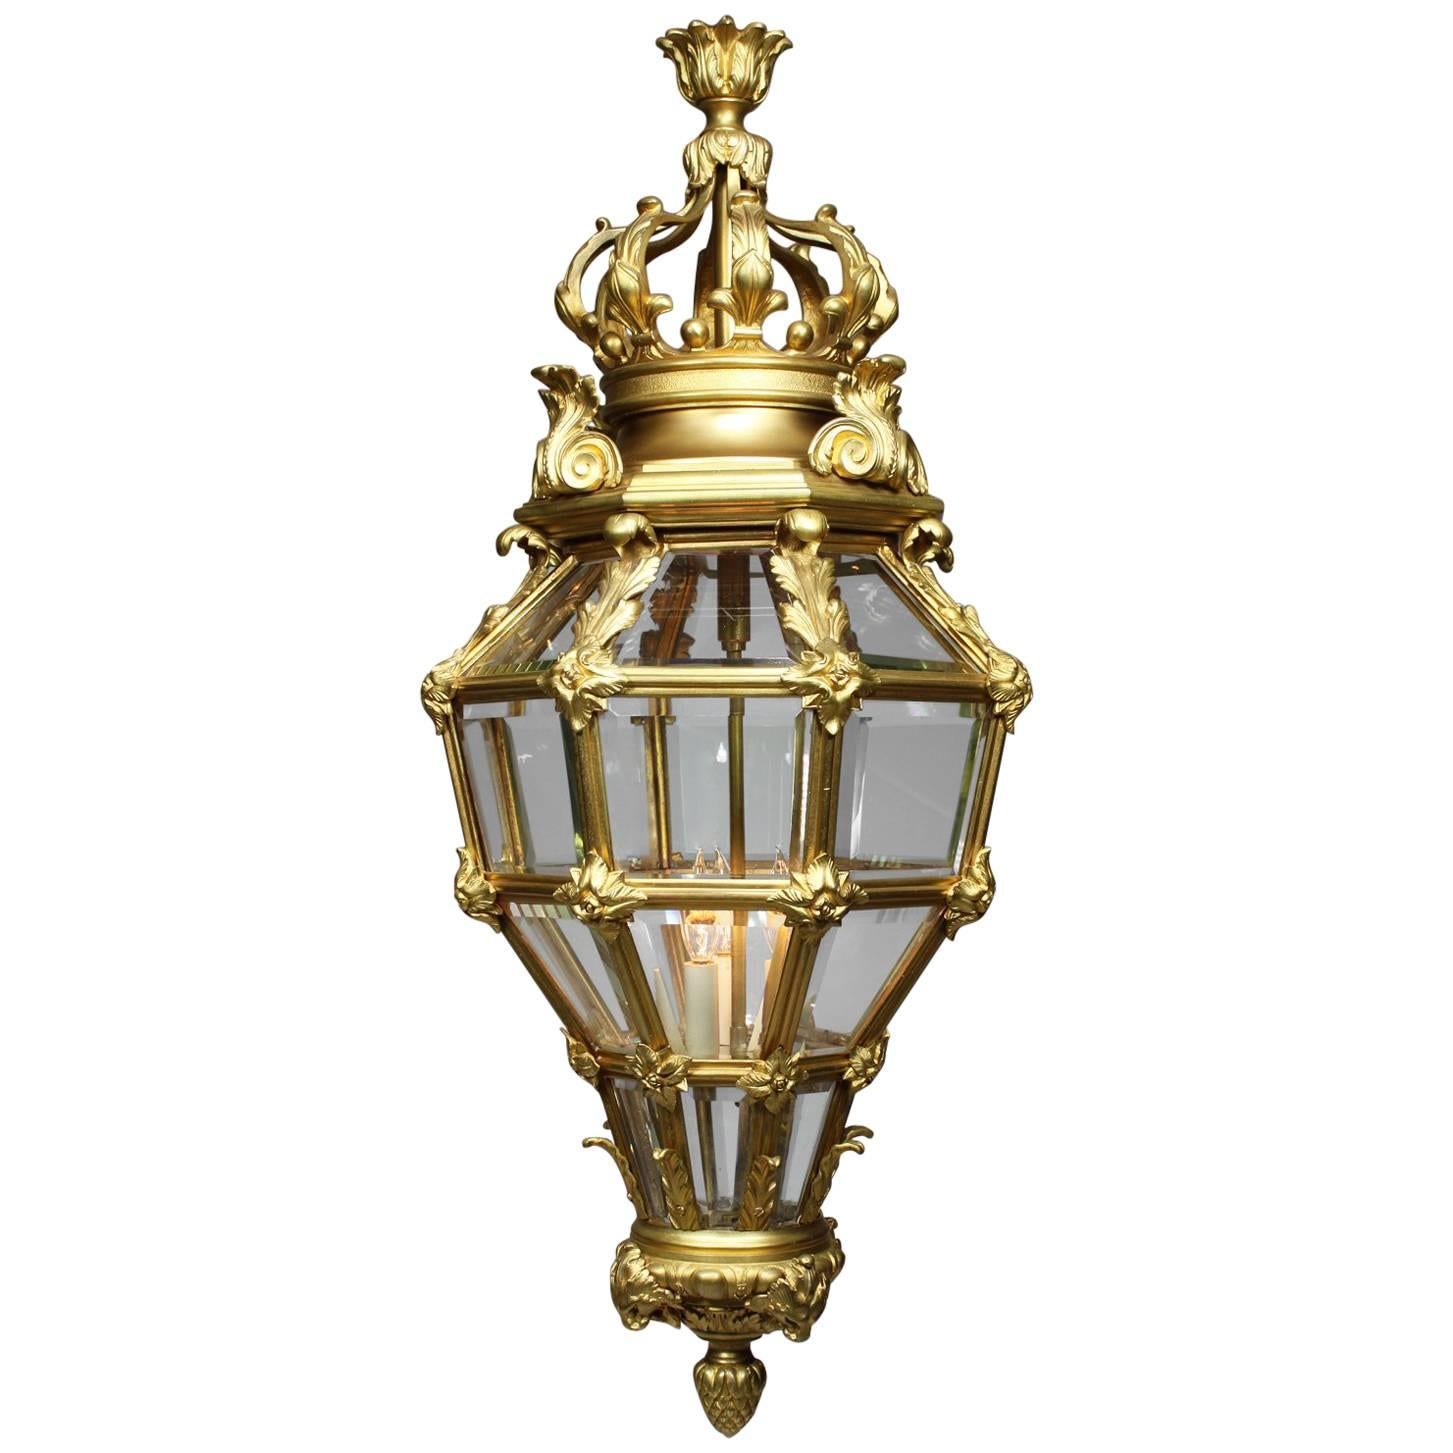 Lanterne figurative française de style Louis XIV du XIXe siècle en bronze doré « Versailles »